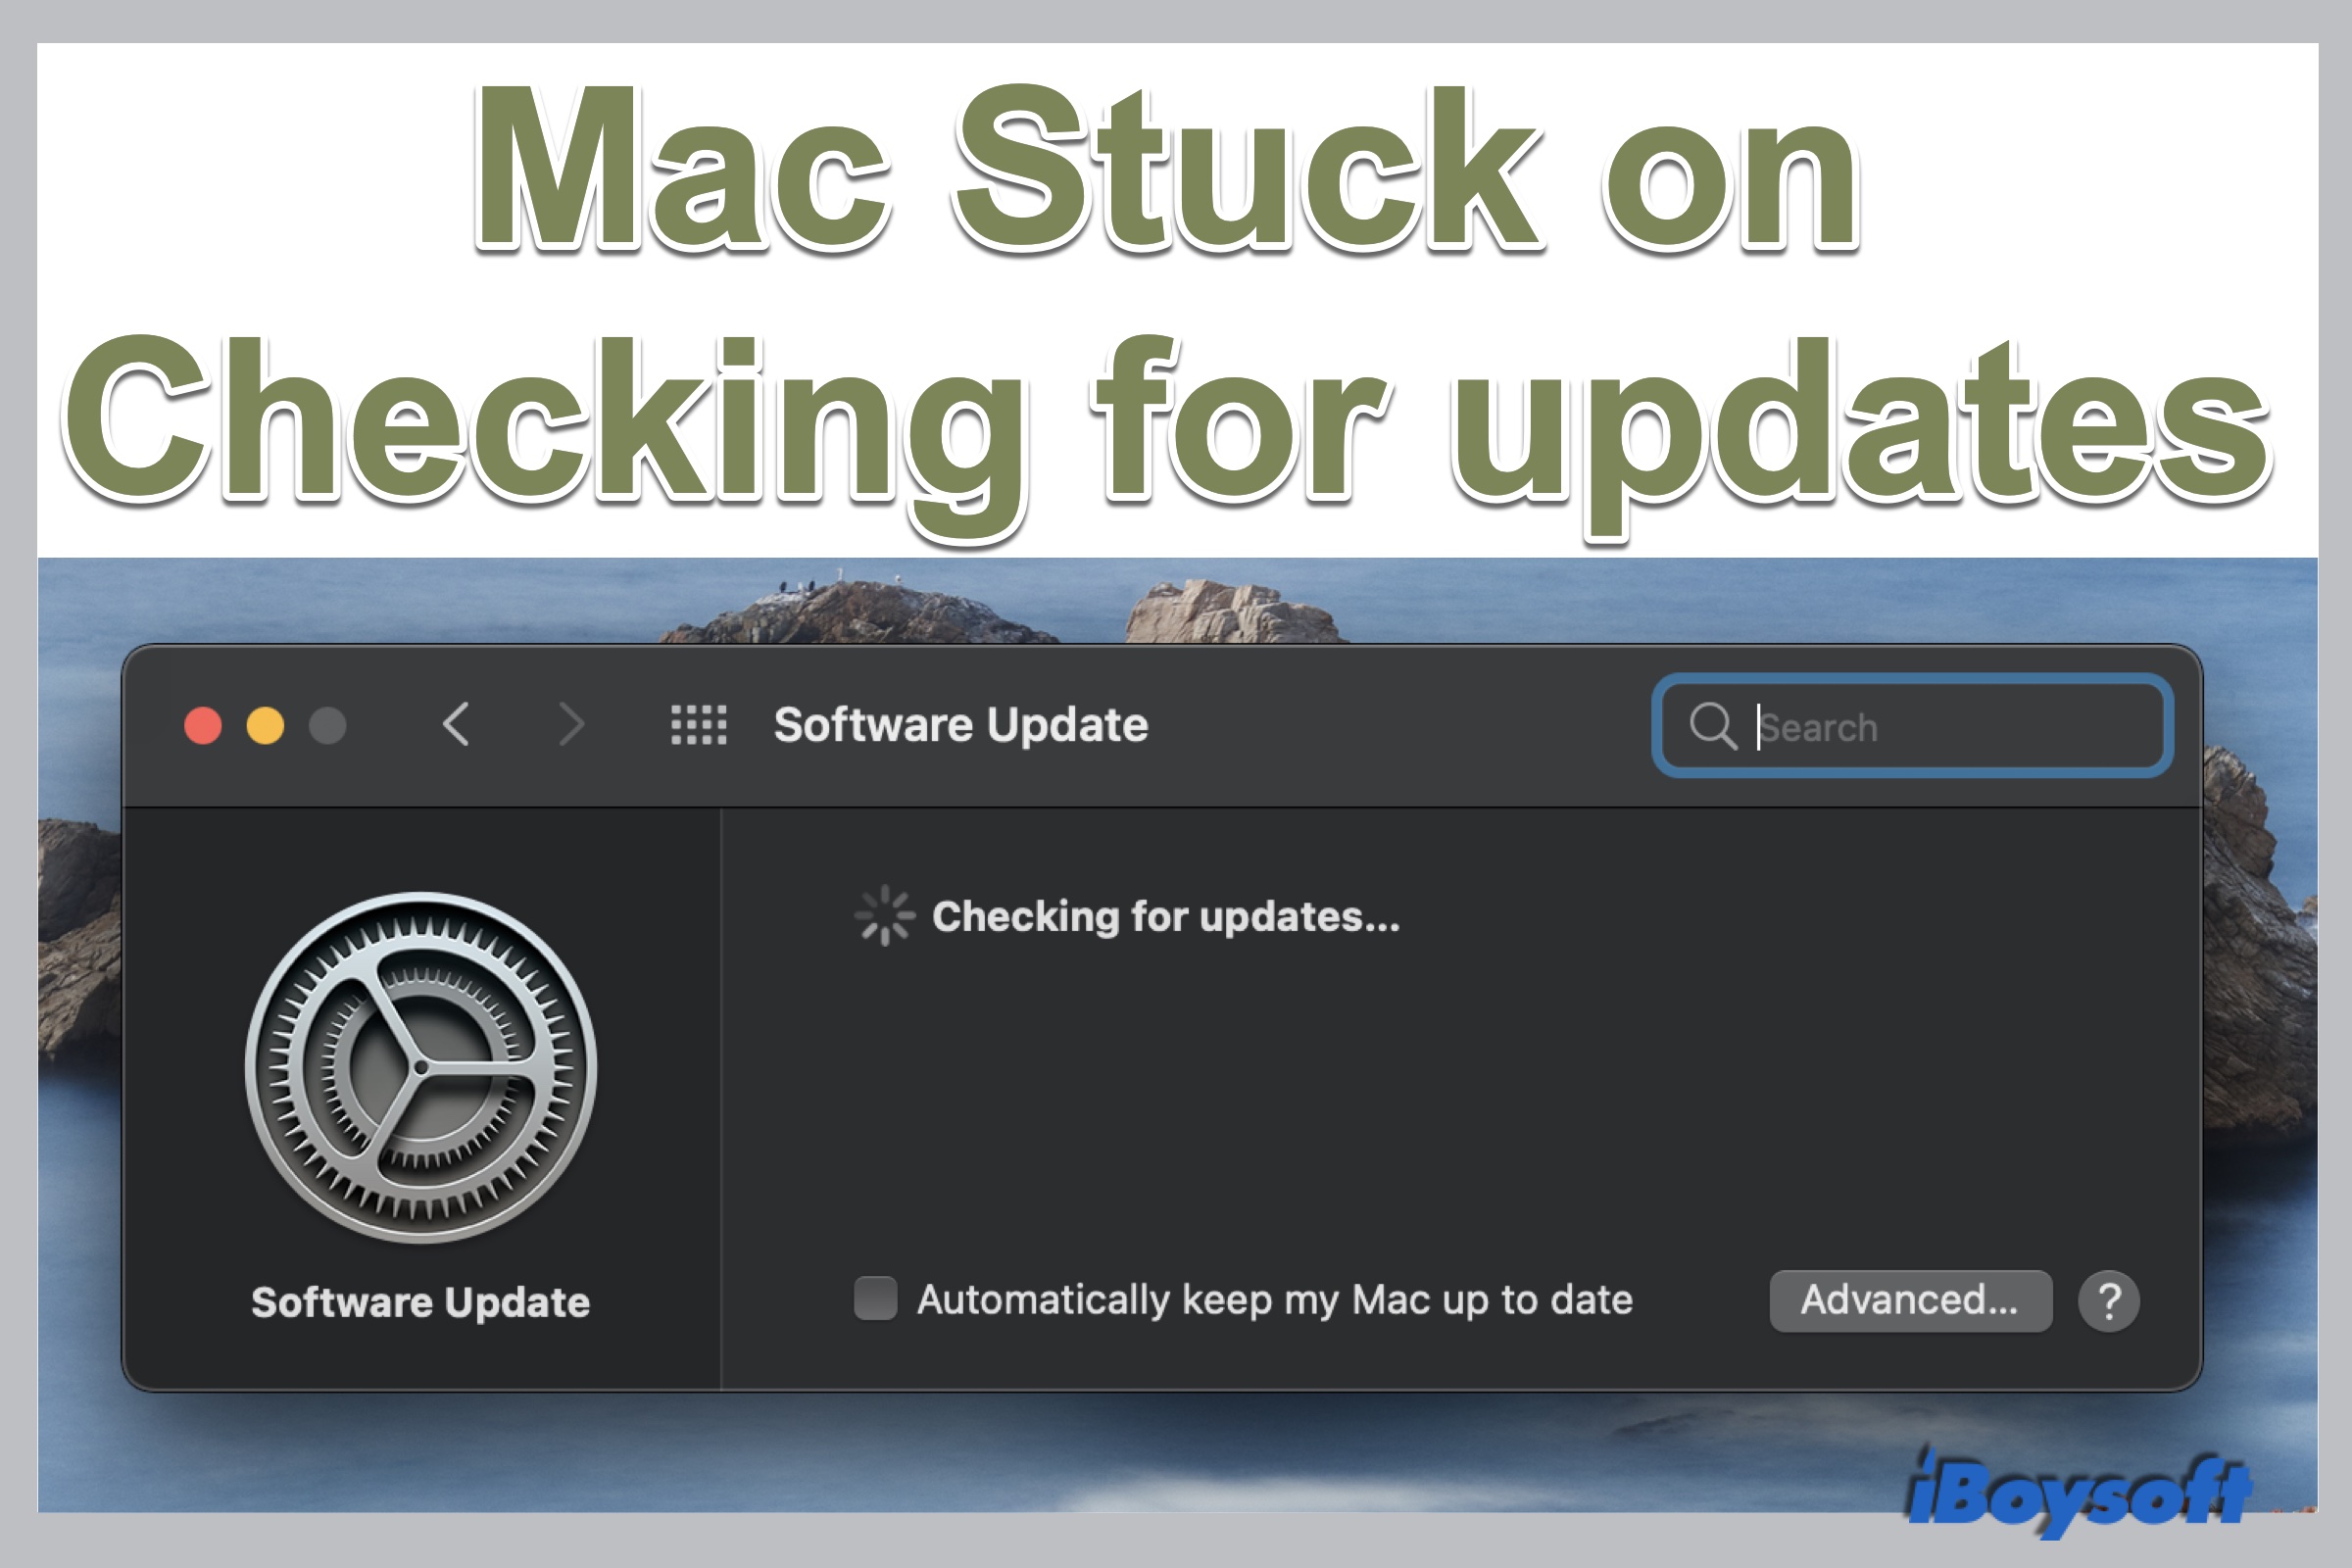 Mac preso em verificando atualizações